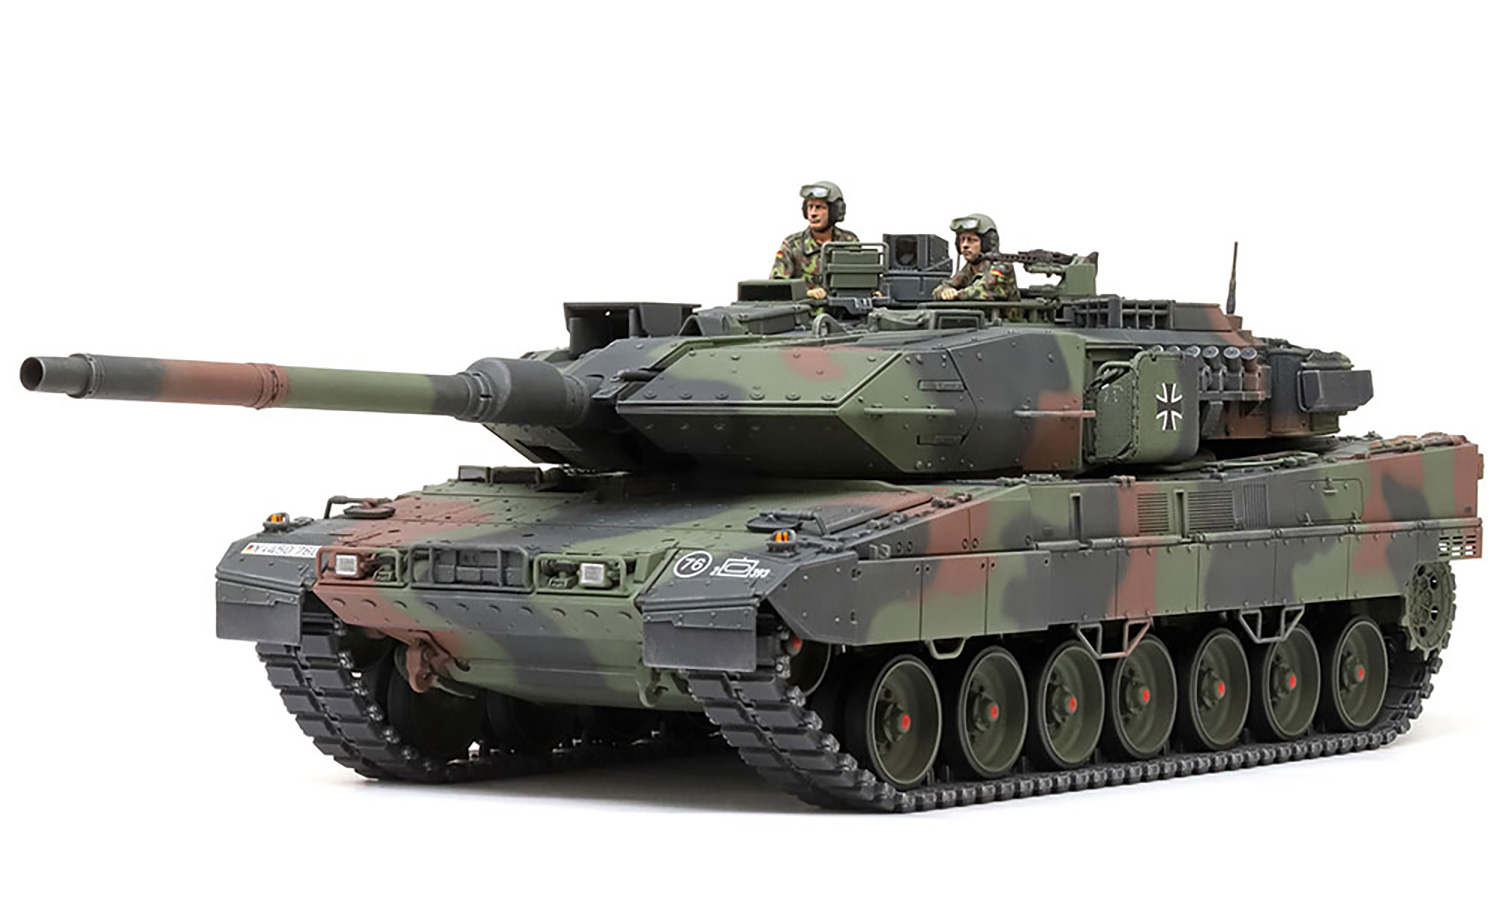 ドイツ連邦軍主力戦車 レオパルト 2 A7V プラモデル (タミヤ 1/35 ミリタリーミニチュアシリーズ No.35387) 商品画像_1